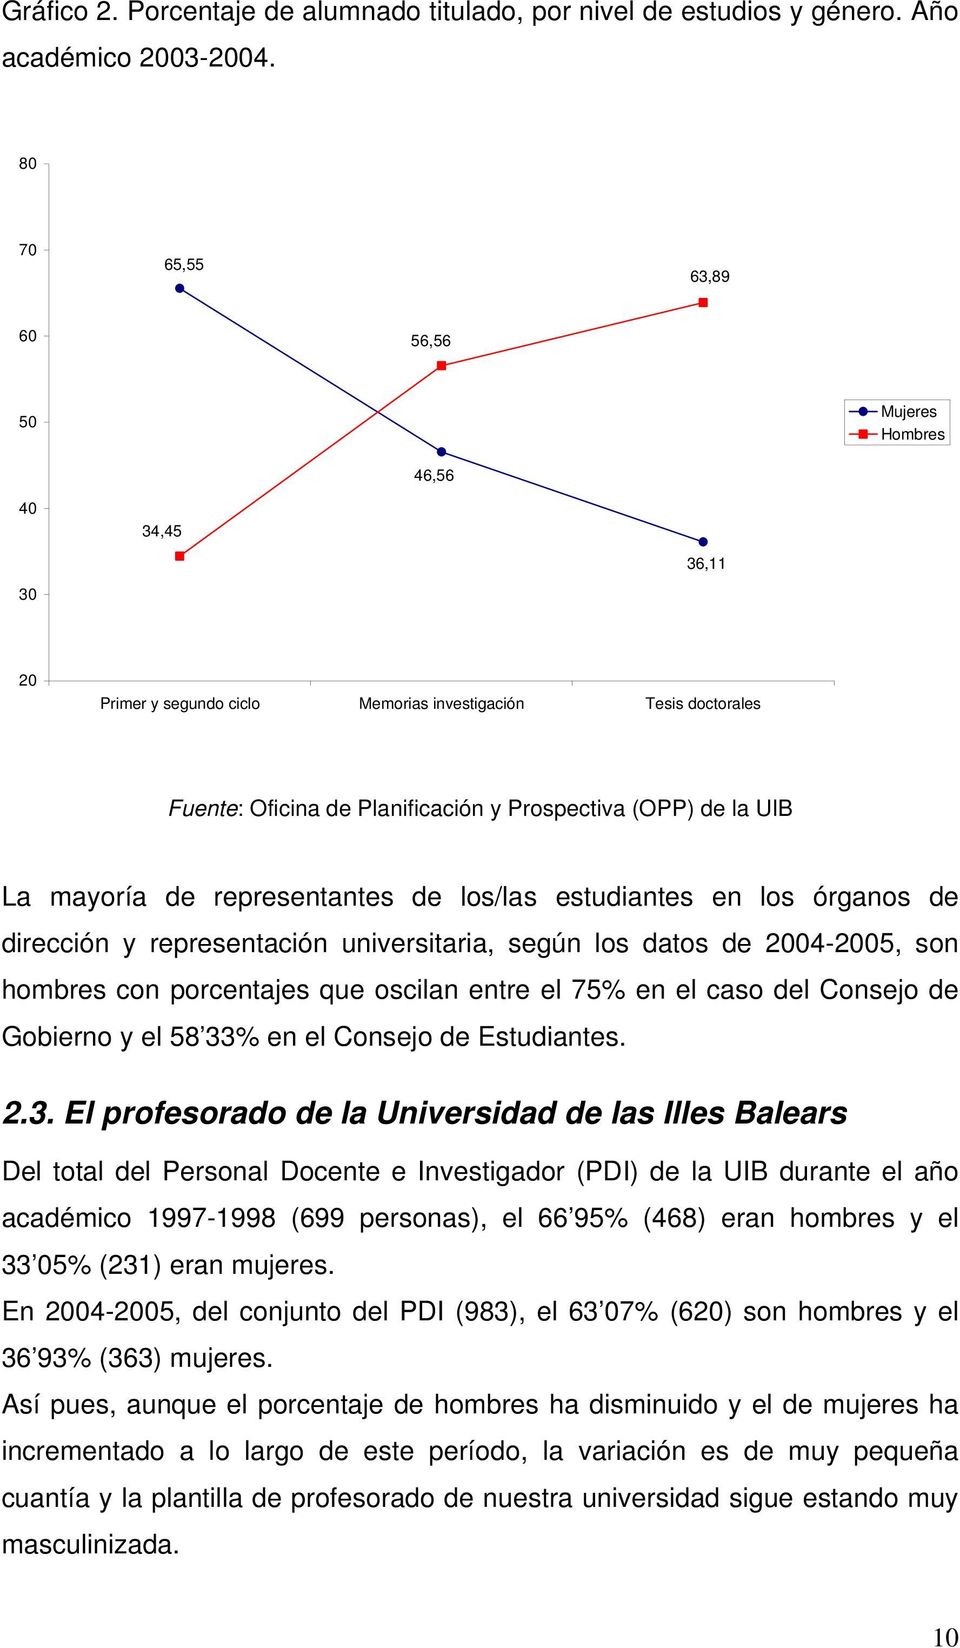 La mayoría de representantes de los/las estudiantes en los órganos de dirección y representación universitaria, según los datos de 2004-2005, son hombres con porcentajes que oscilan entre el 75% en